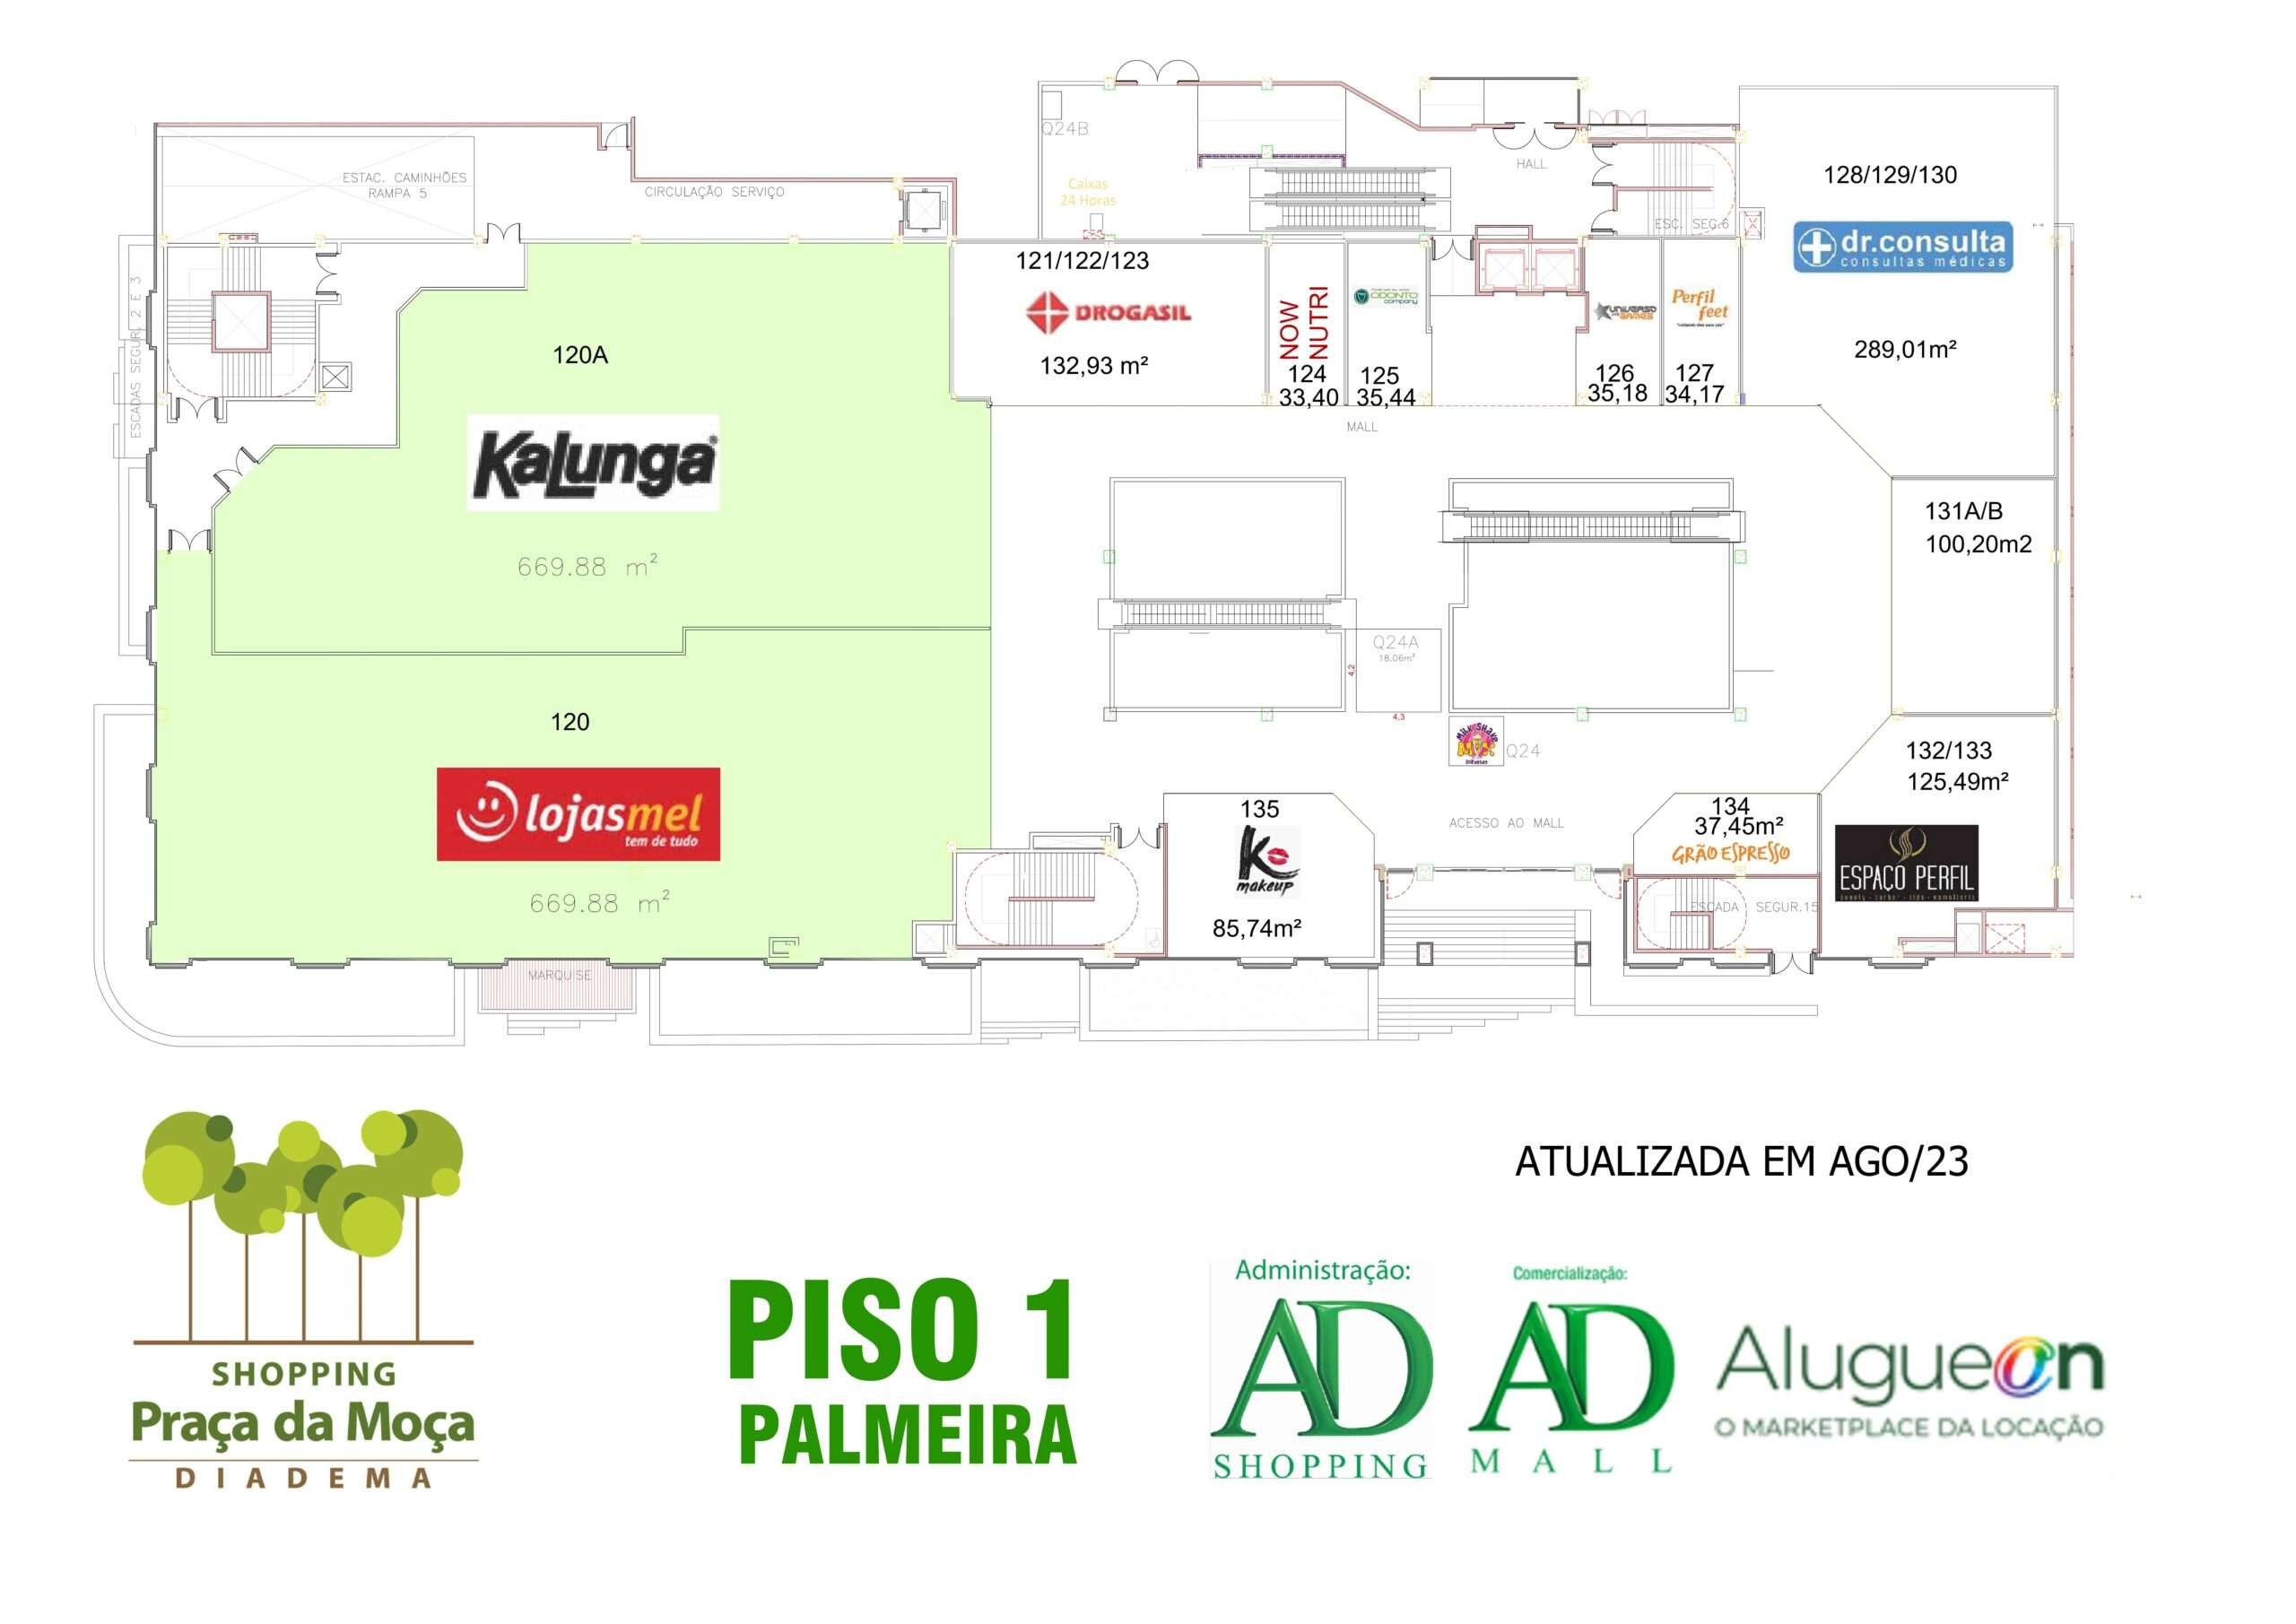 Shopping-Praca da Moca-piso-1-palmeira-alugueon